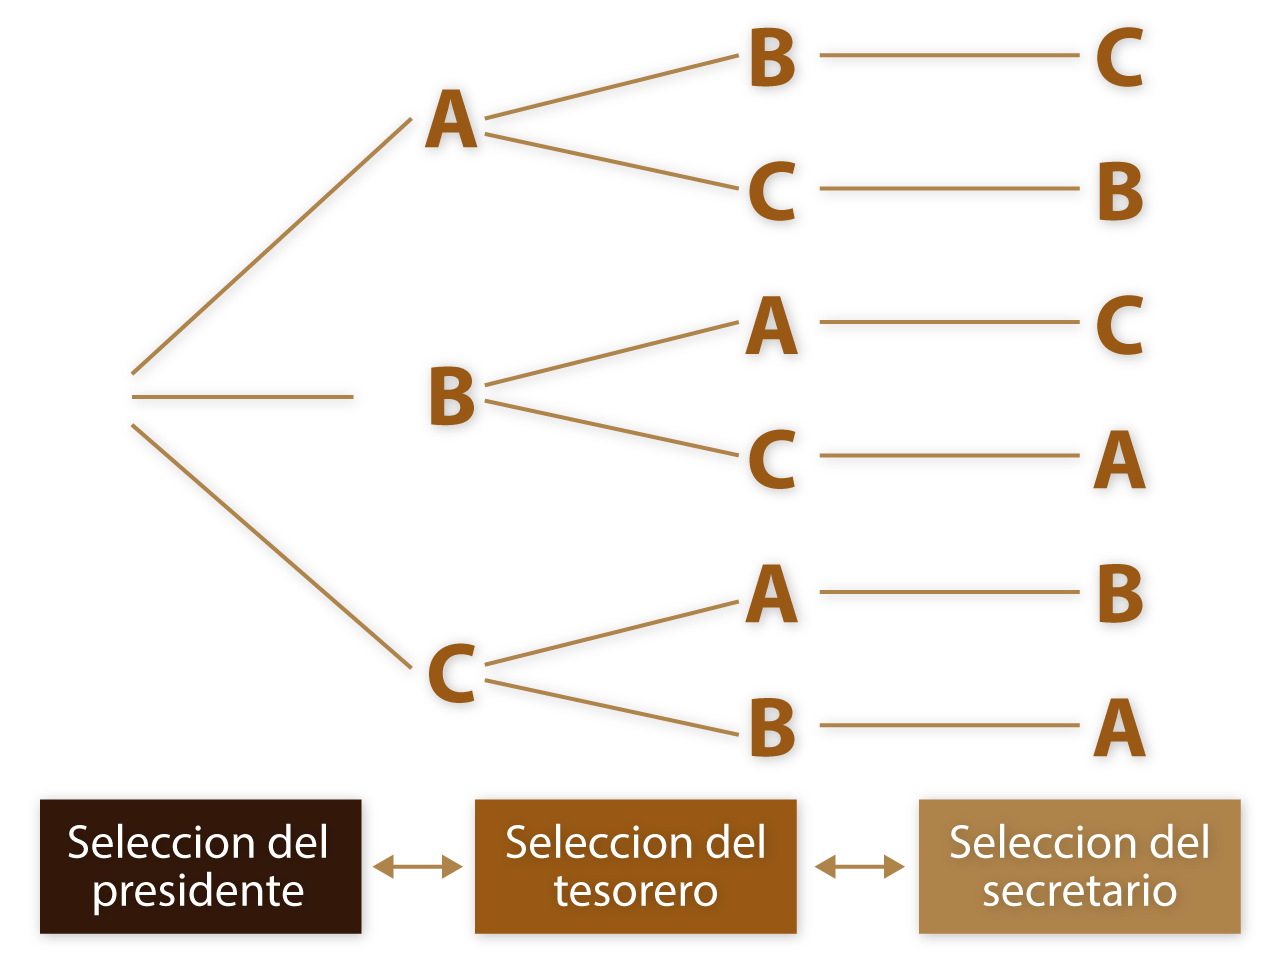 Diagrama de árbol en el que se explica cómo se realizaría la designación de presidente, tesorero y secretario.